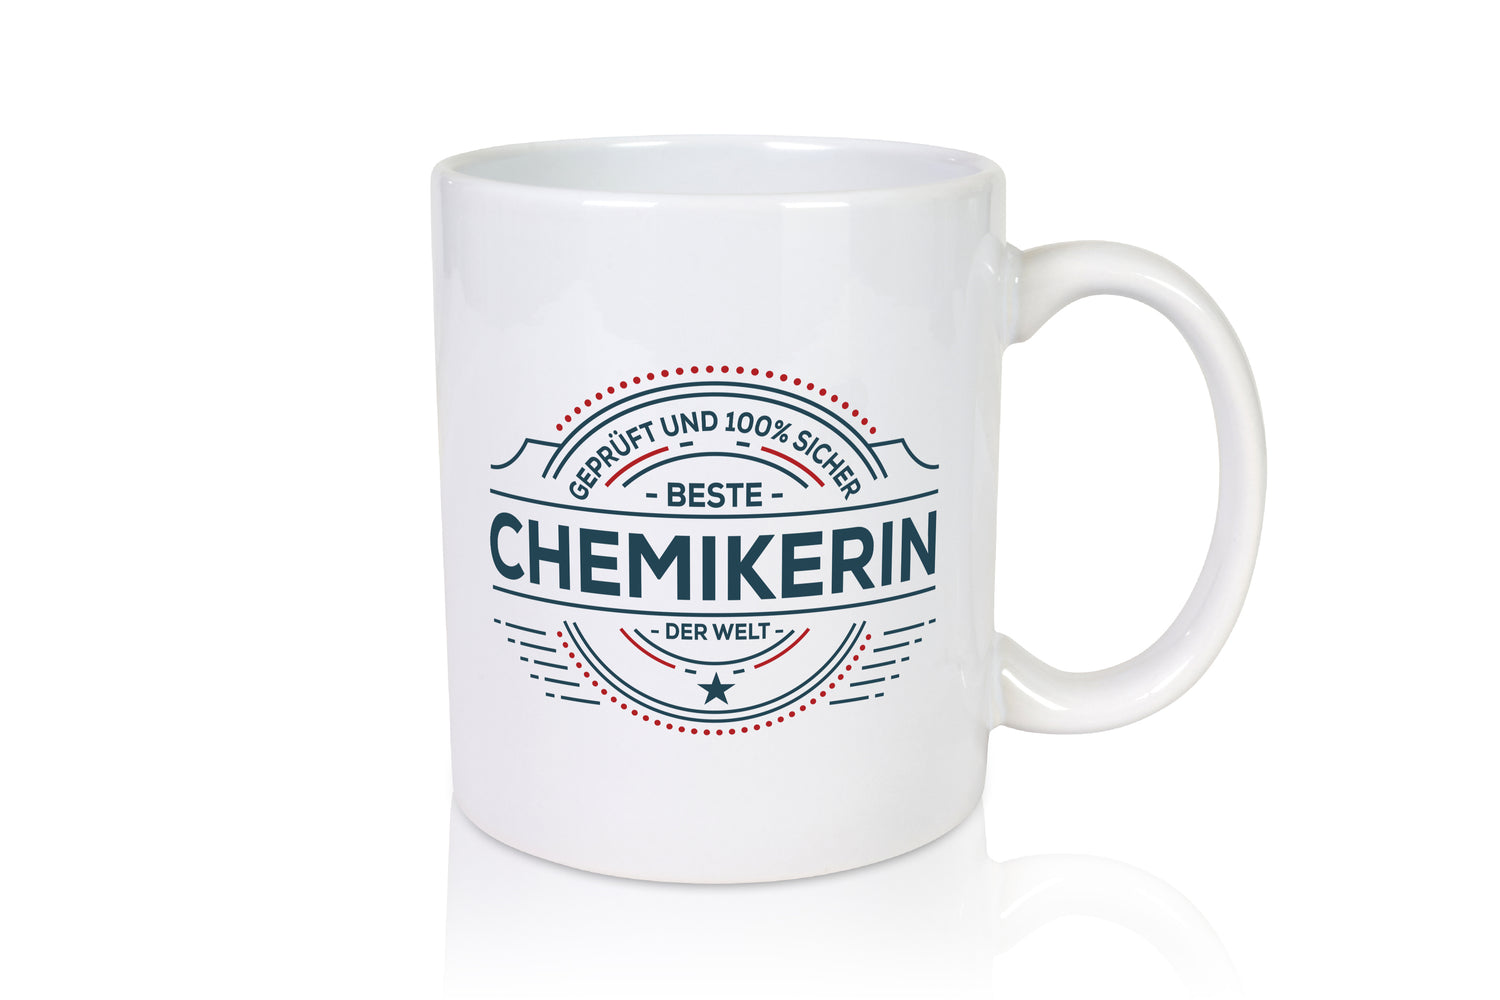 Geprüft und sicher: Chemikerin | Chemie | Labor - Tasse Weiß - Kaffeetasse / Geschenk / Familie